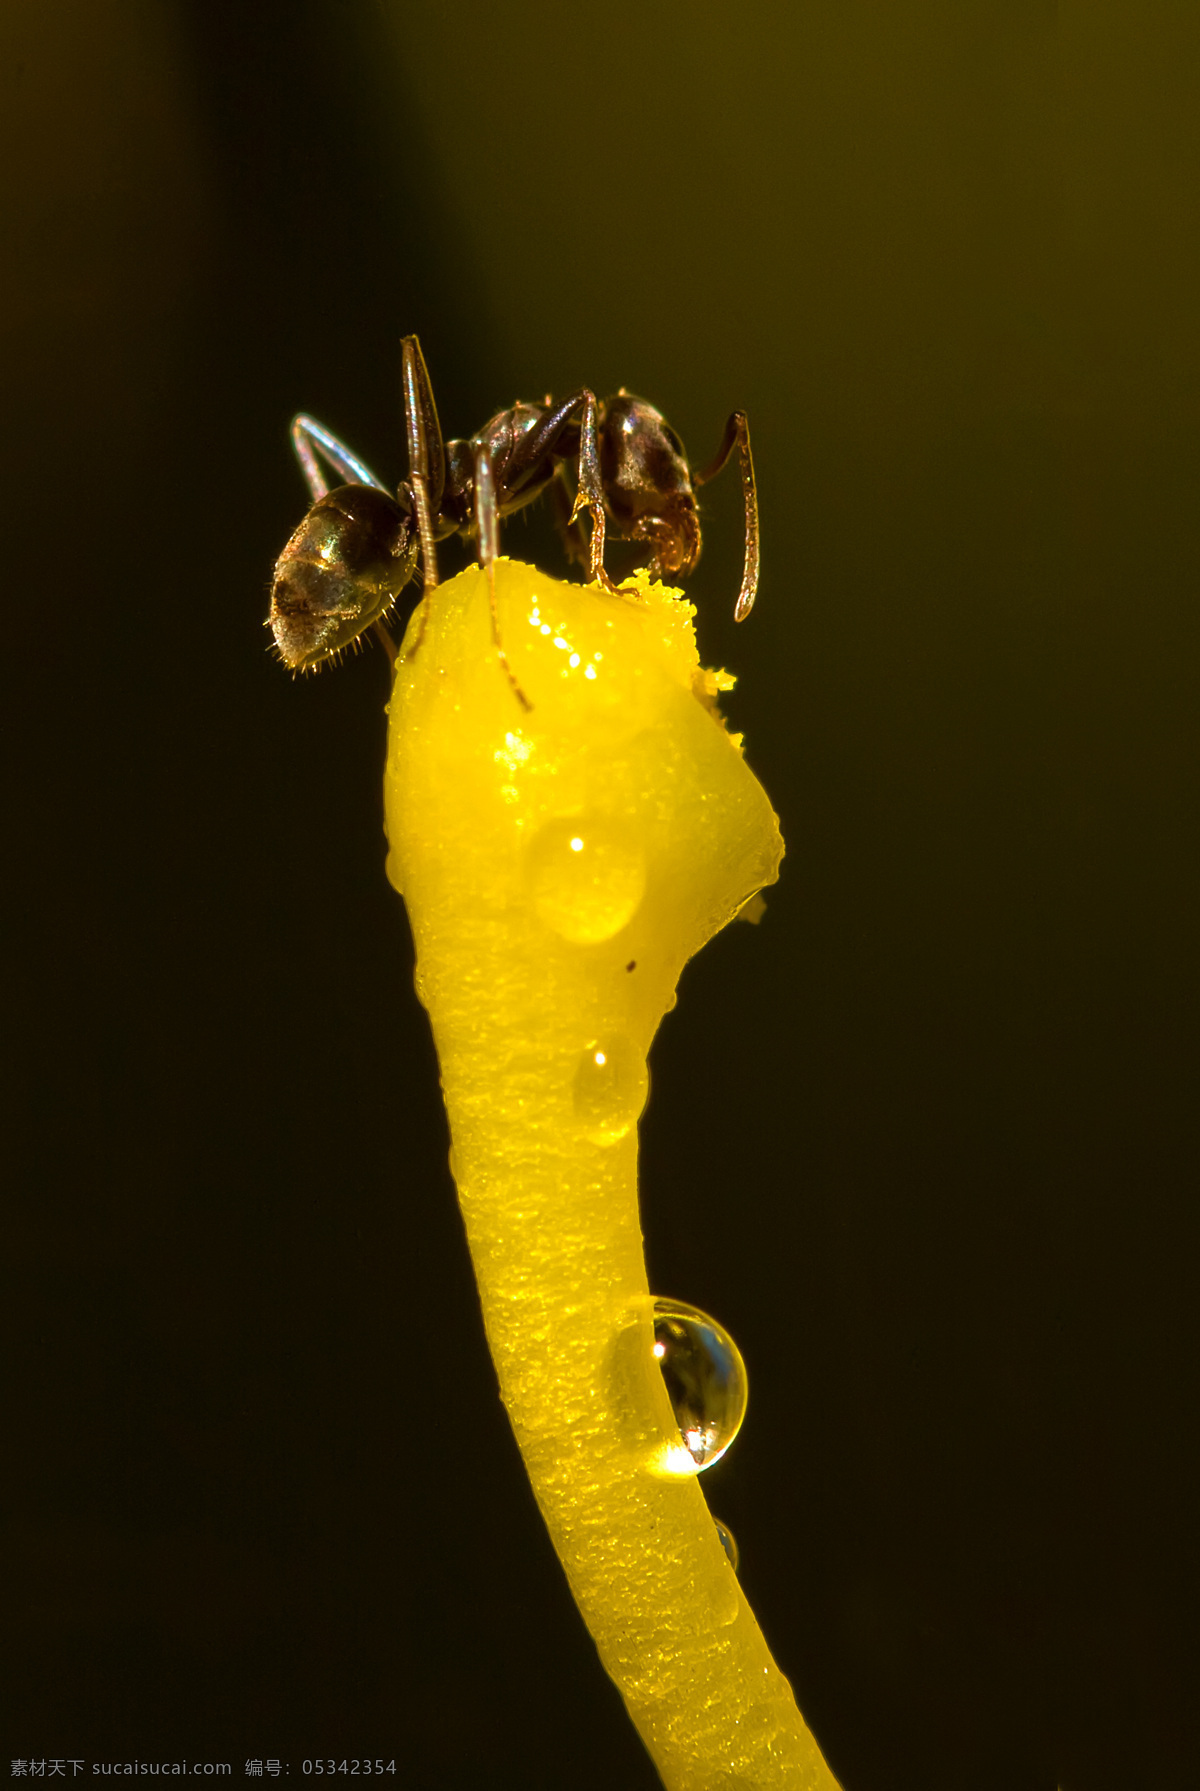 蚂蚁 昆虫 蚂蚁素材 蚂蚁图片 生物世界 昆虫摄影 蚁 昆蜉 昆虫科 蚁类